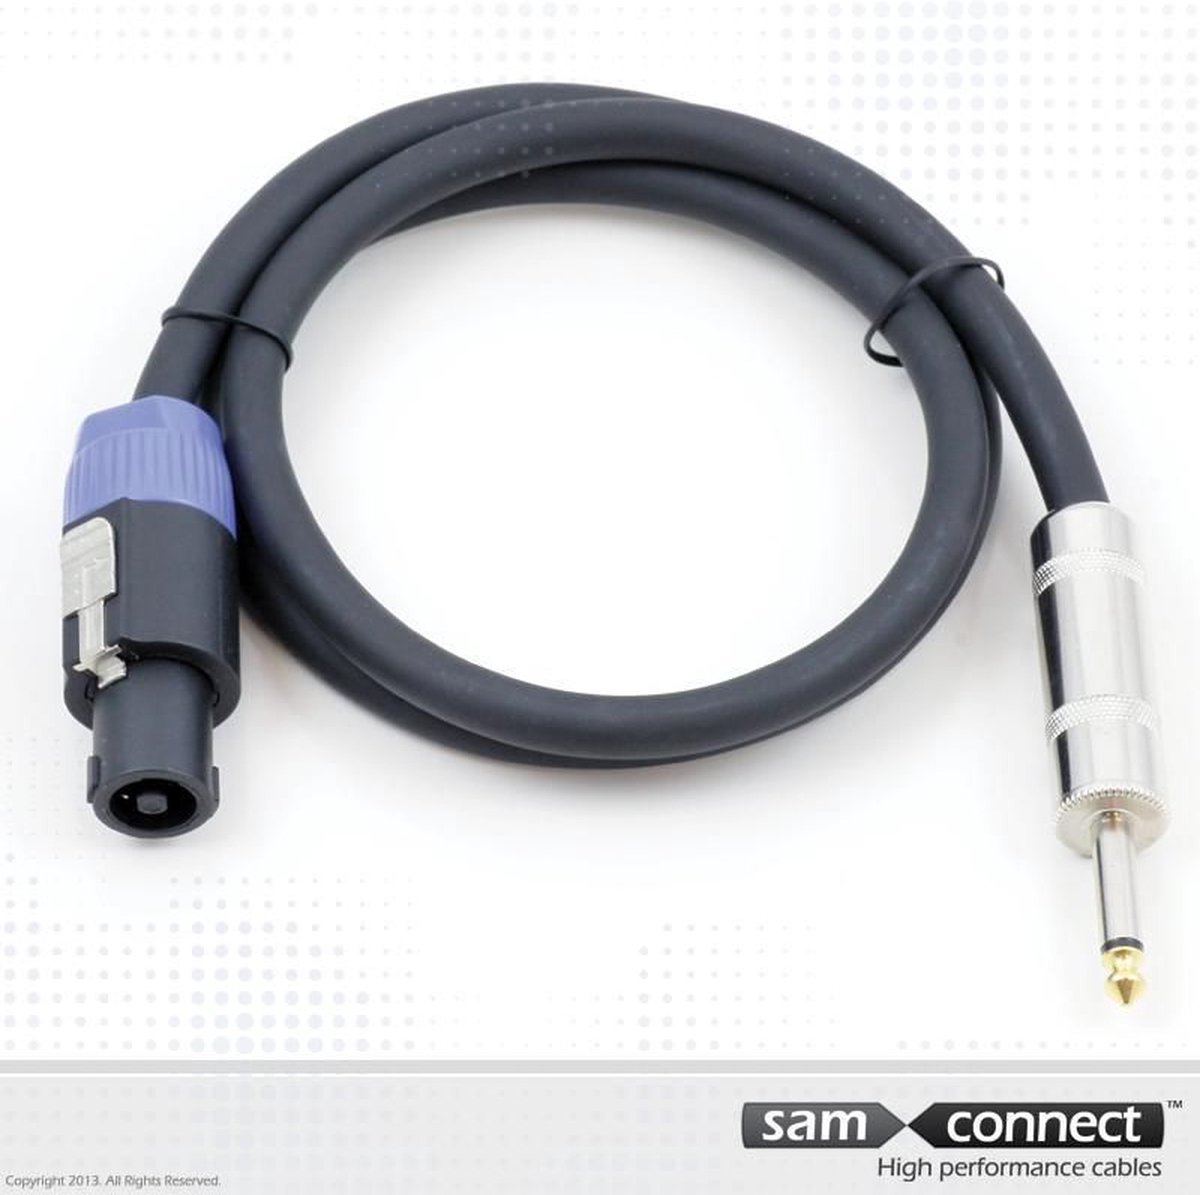 Câble adaptateur enceinte (M) / prise jack 5 m noir - omnitronic